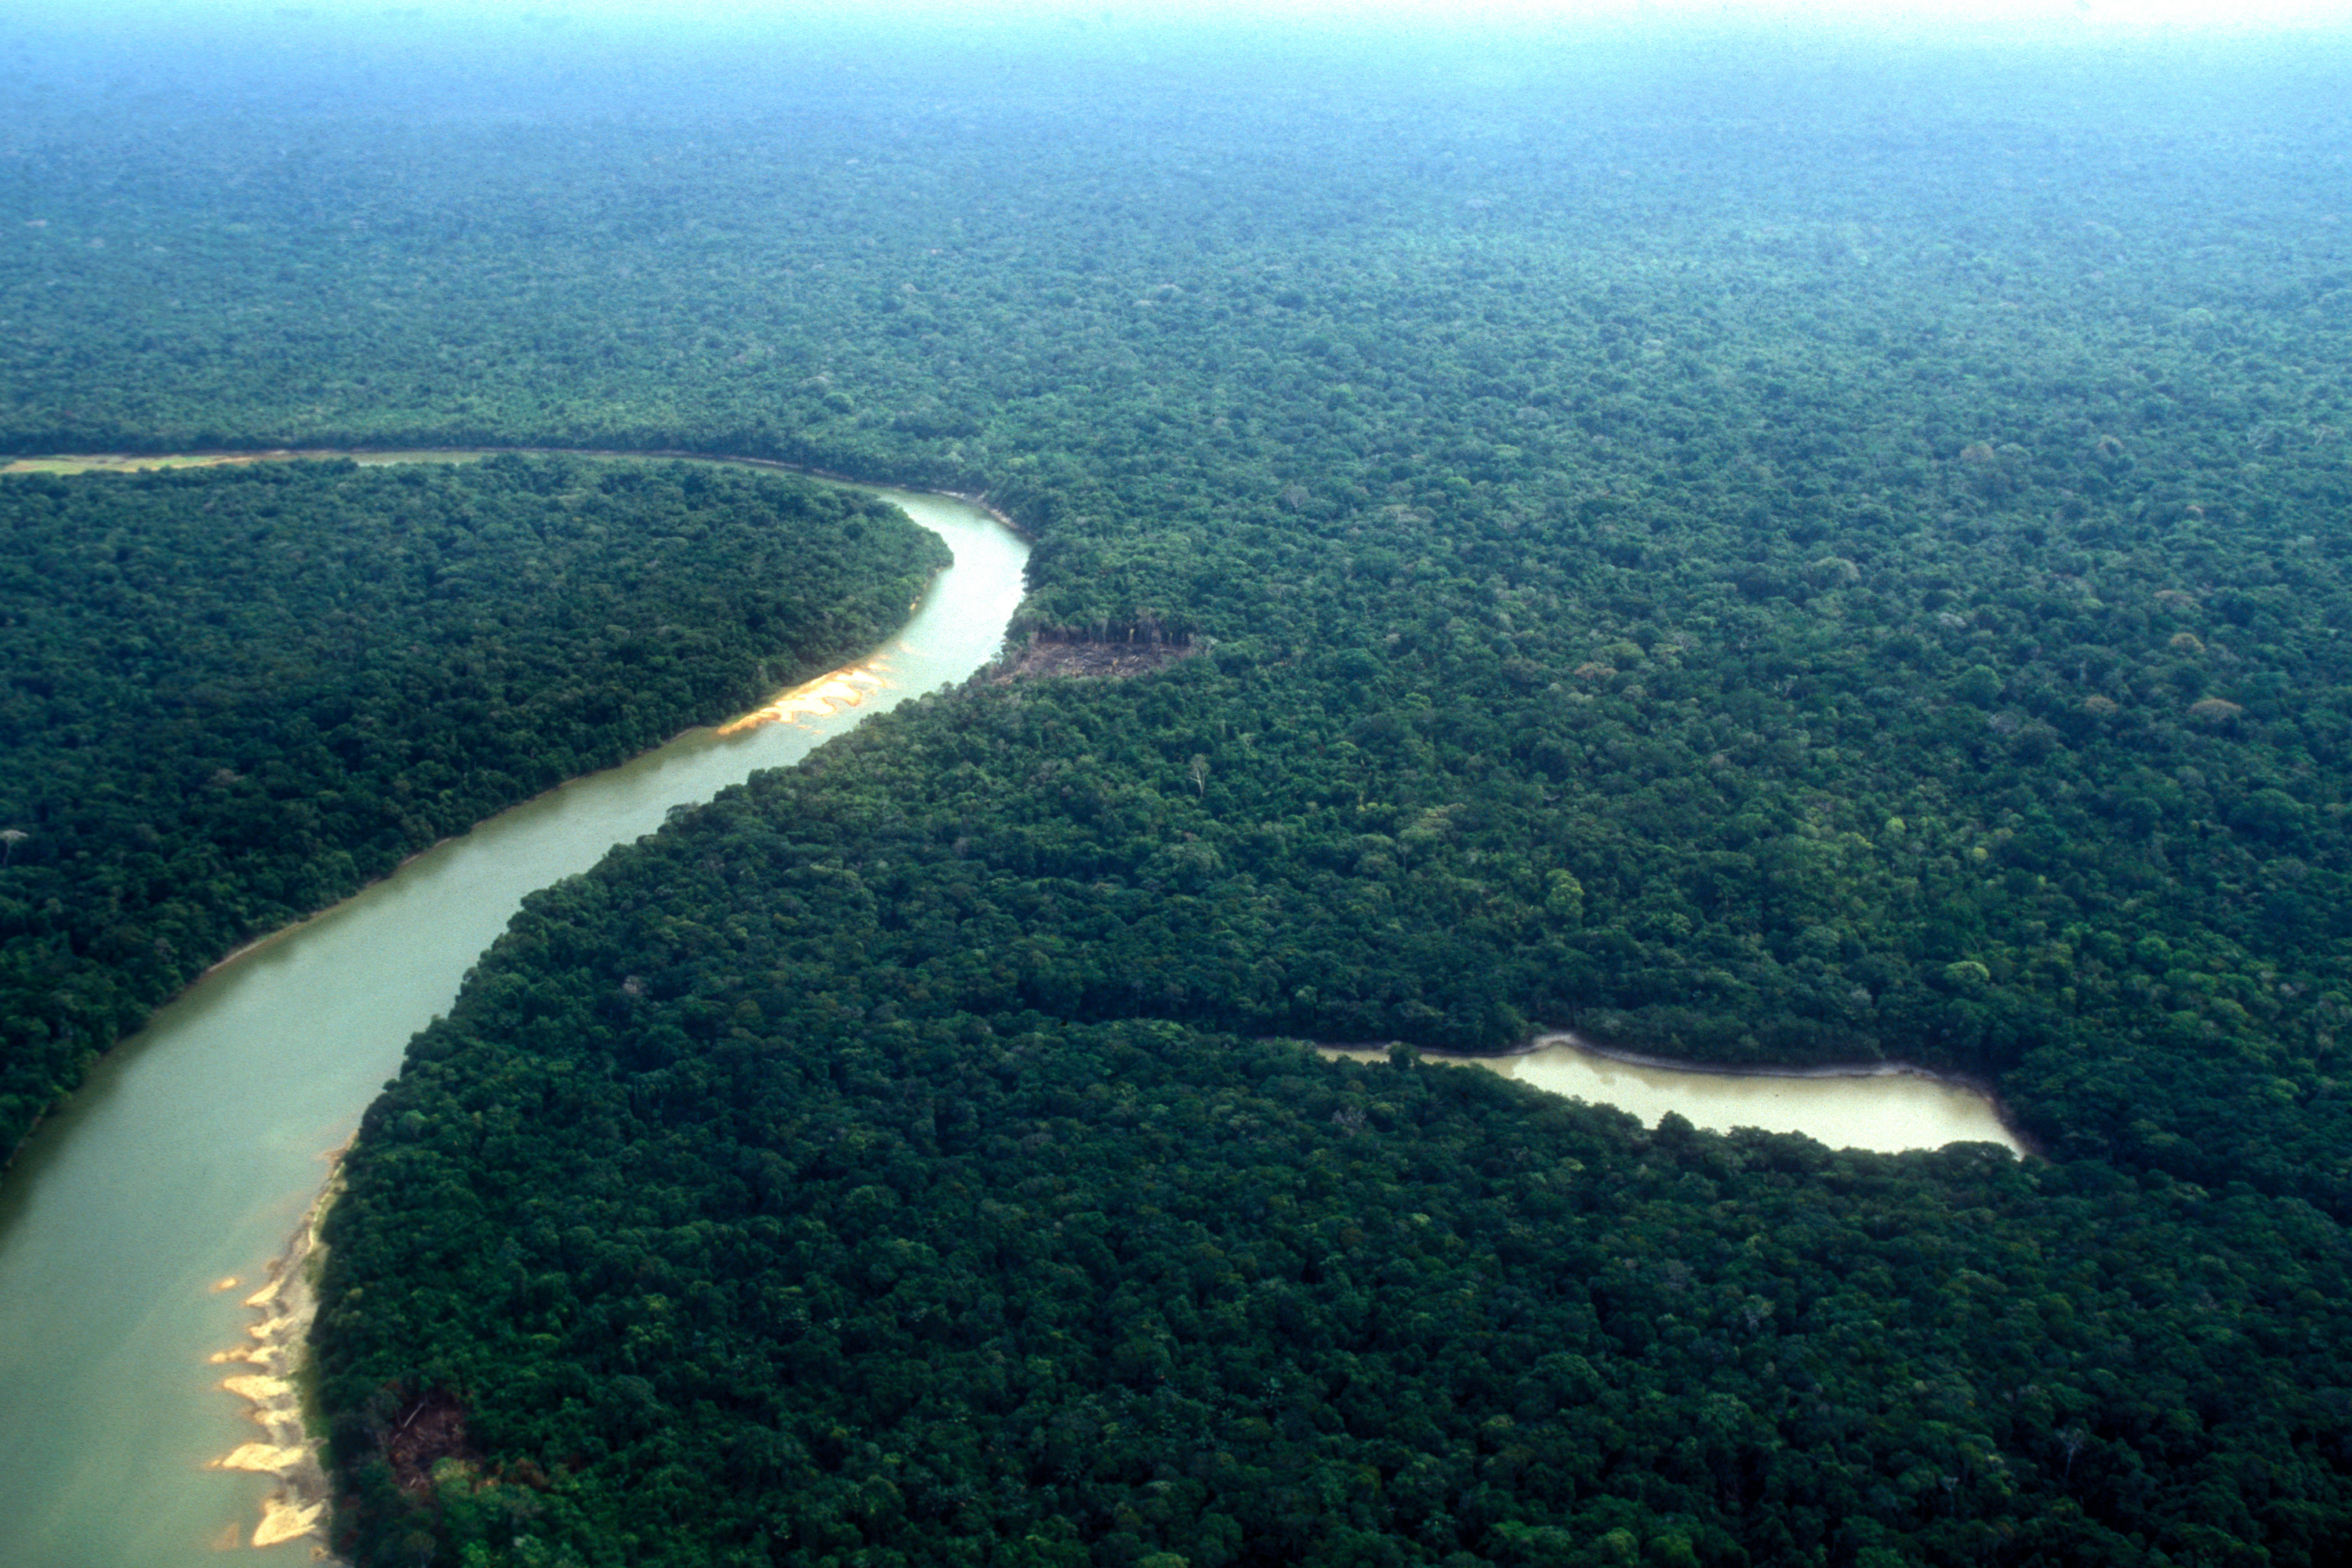 Le cuir, une cause insoupçonnée de déforestation de l’Amazonie - LÉRISA